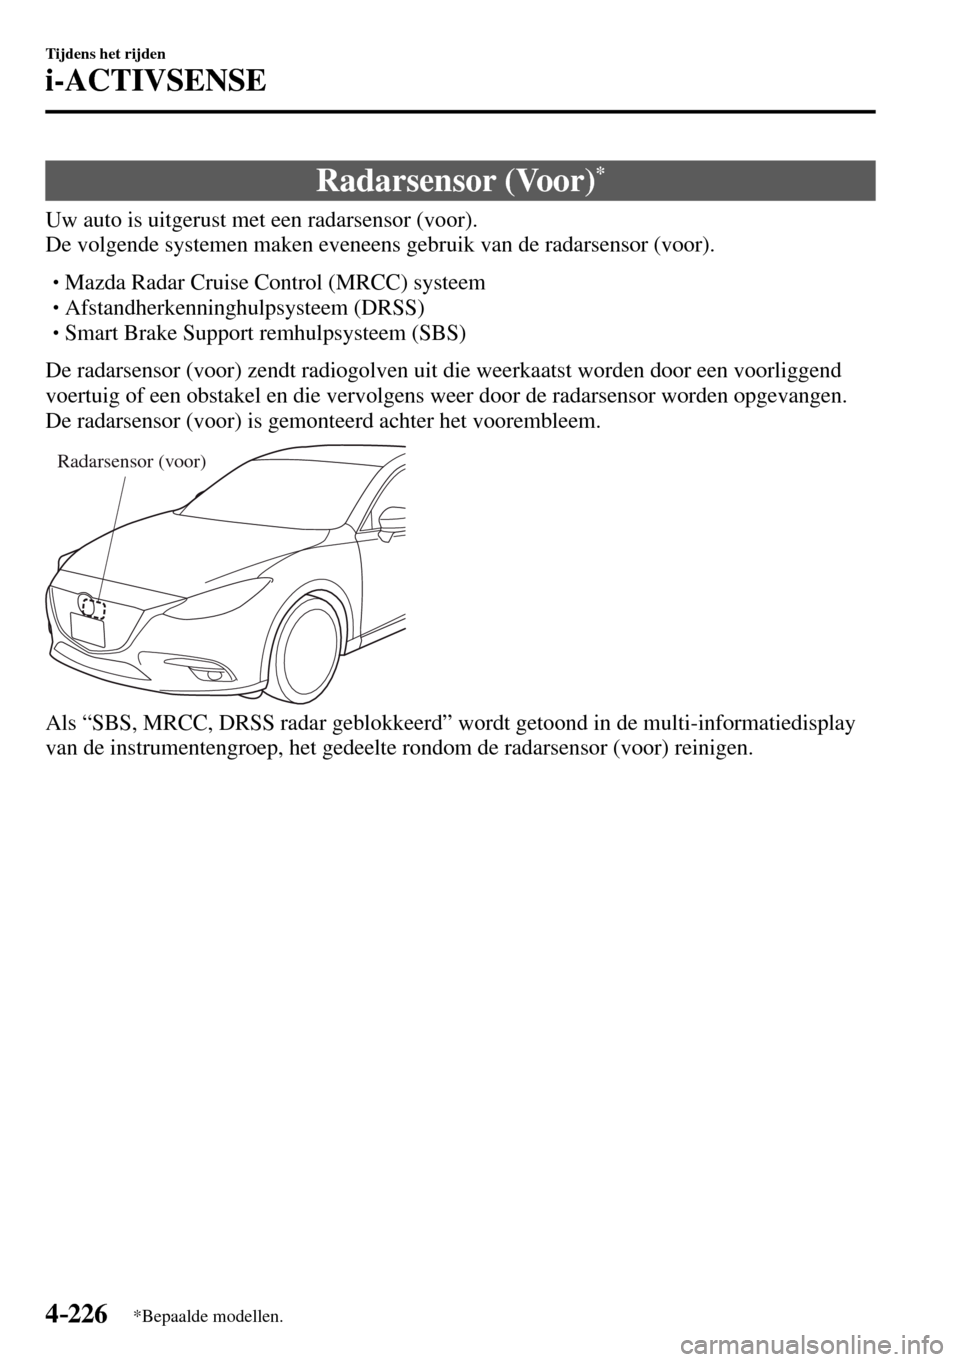 MAZDA MODEL 3 HATCHBACK 2016  Handleiding (in Dutch) 4–226
Tijdens het rijden
i-ACTIVSENSE
*Bepaalde modellen.
 Radarsensor  (Voor) *
              Uw  auto  is  uitgerust  met  een  radarsensor  (voor).
  De volgende systemen maken eveneens gebruik v